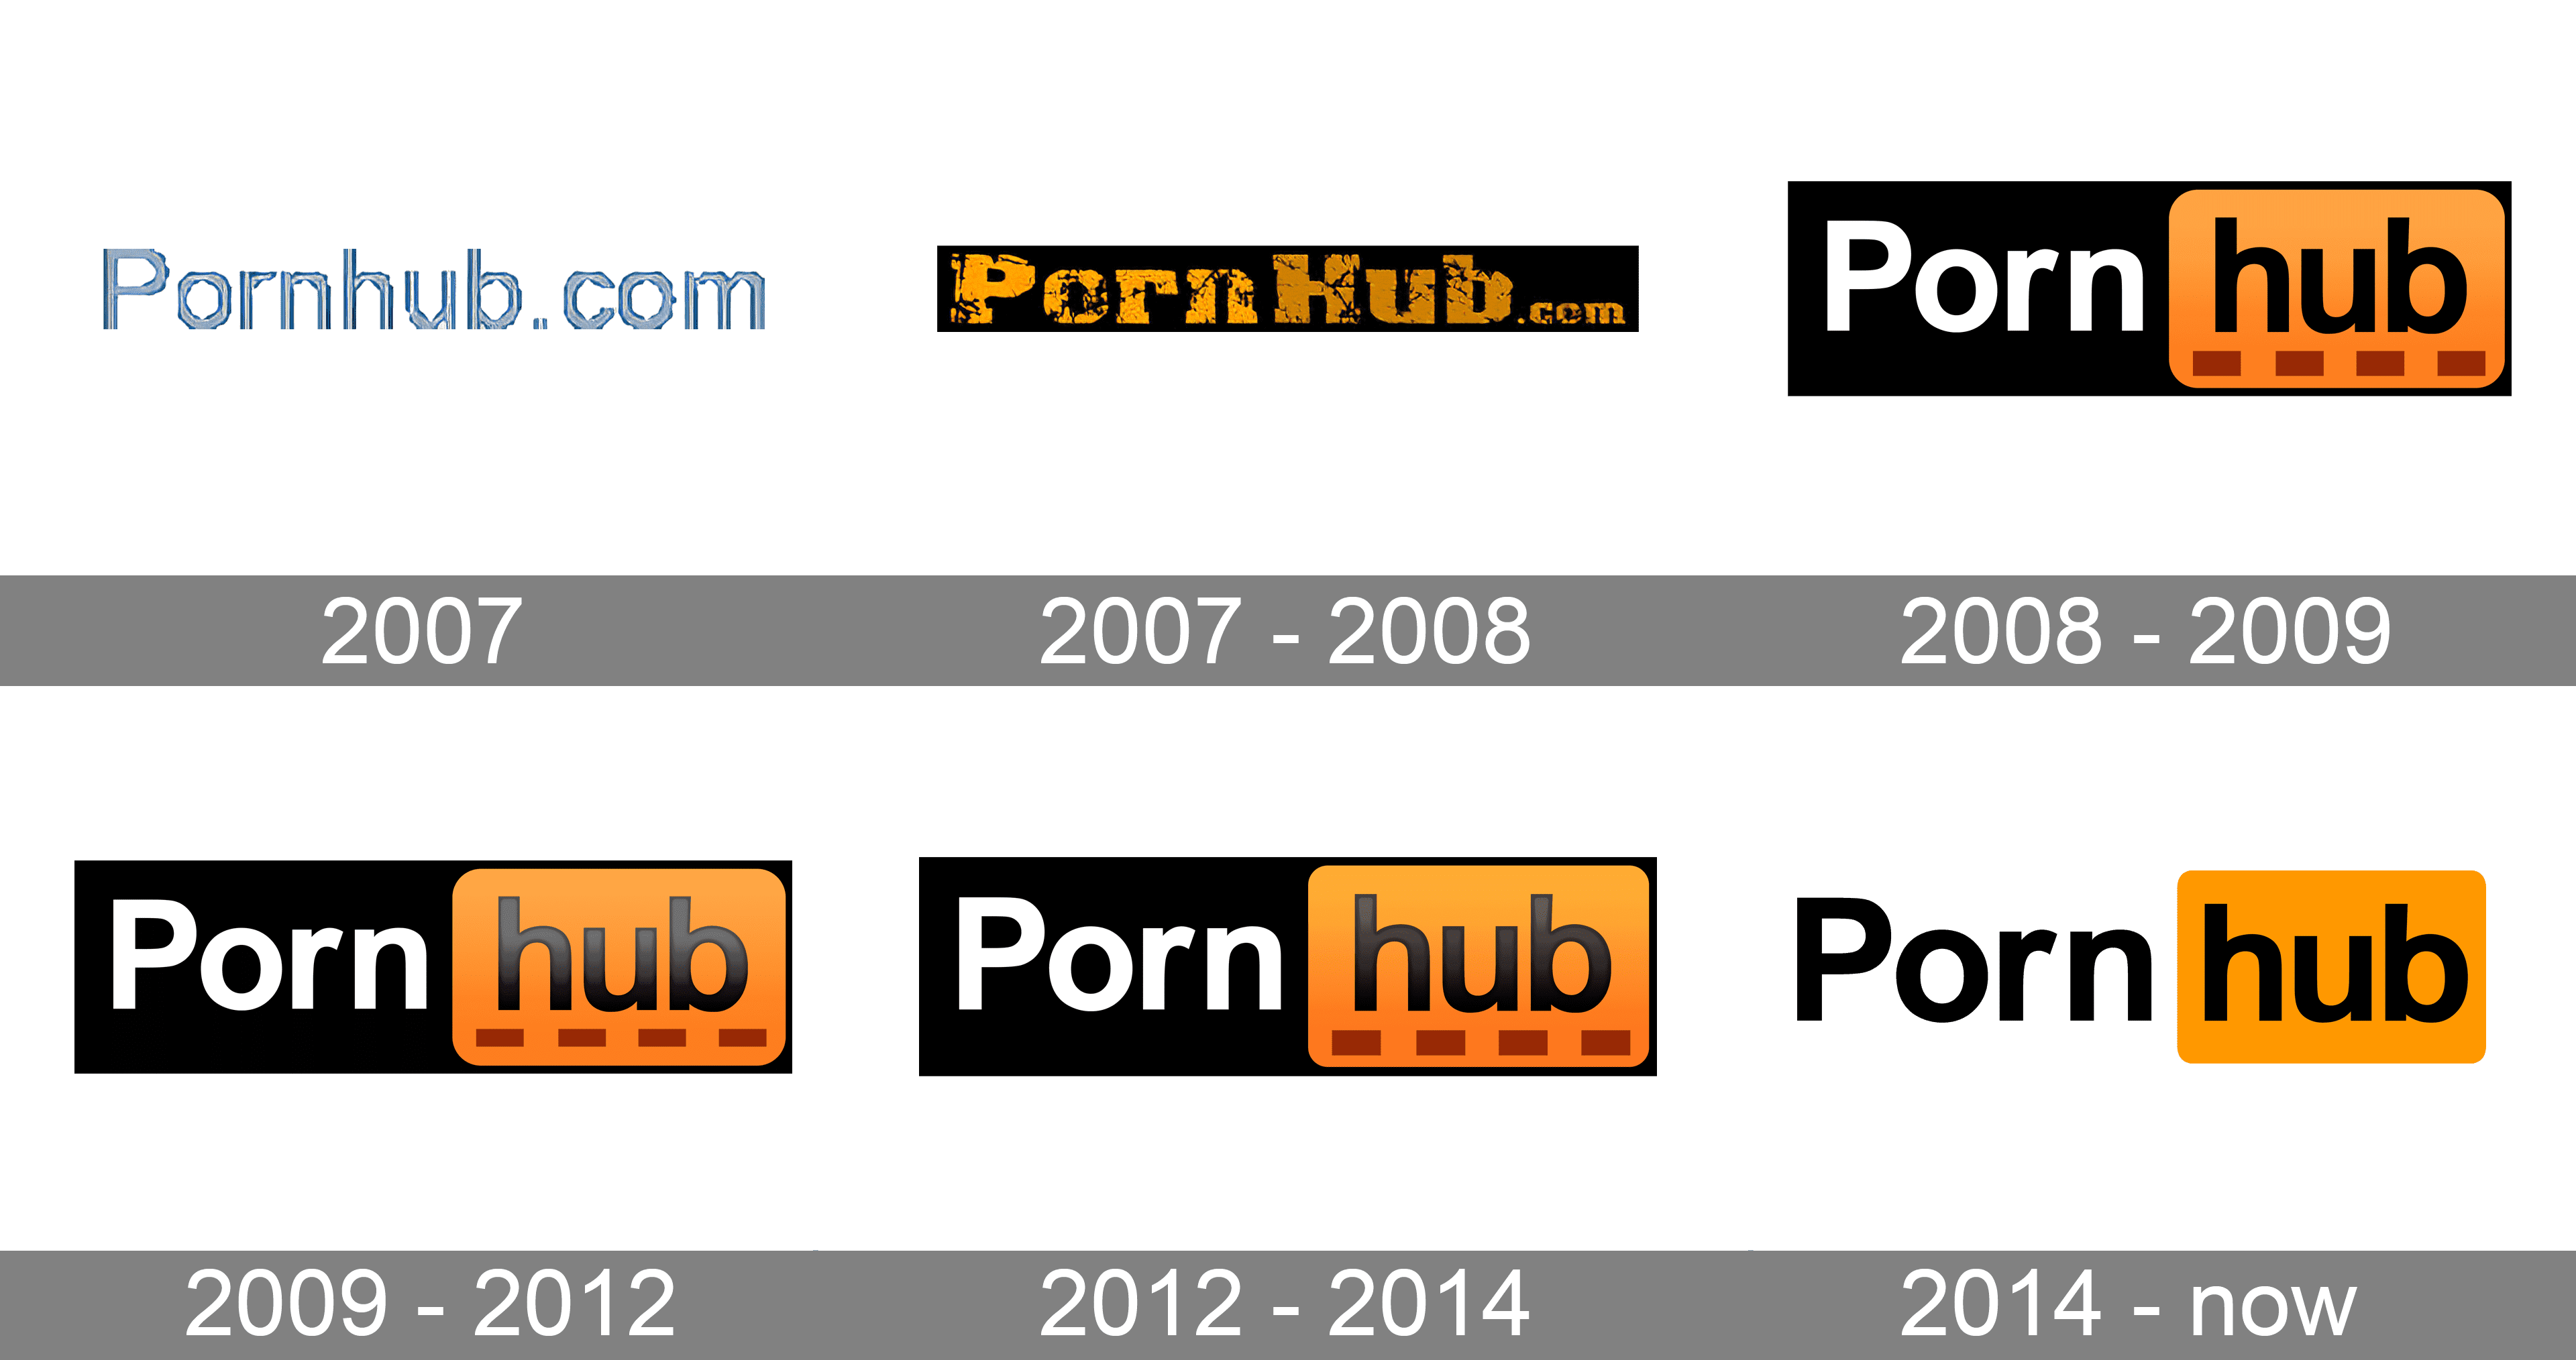 ardhi wicaksono recommends Porno Hub Free Videos